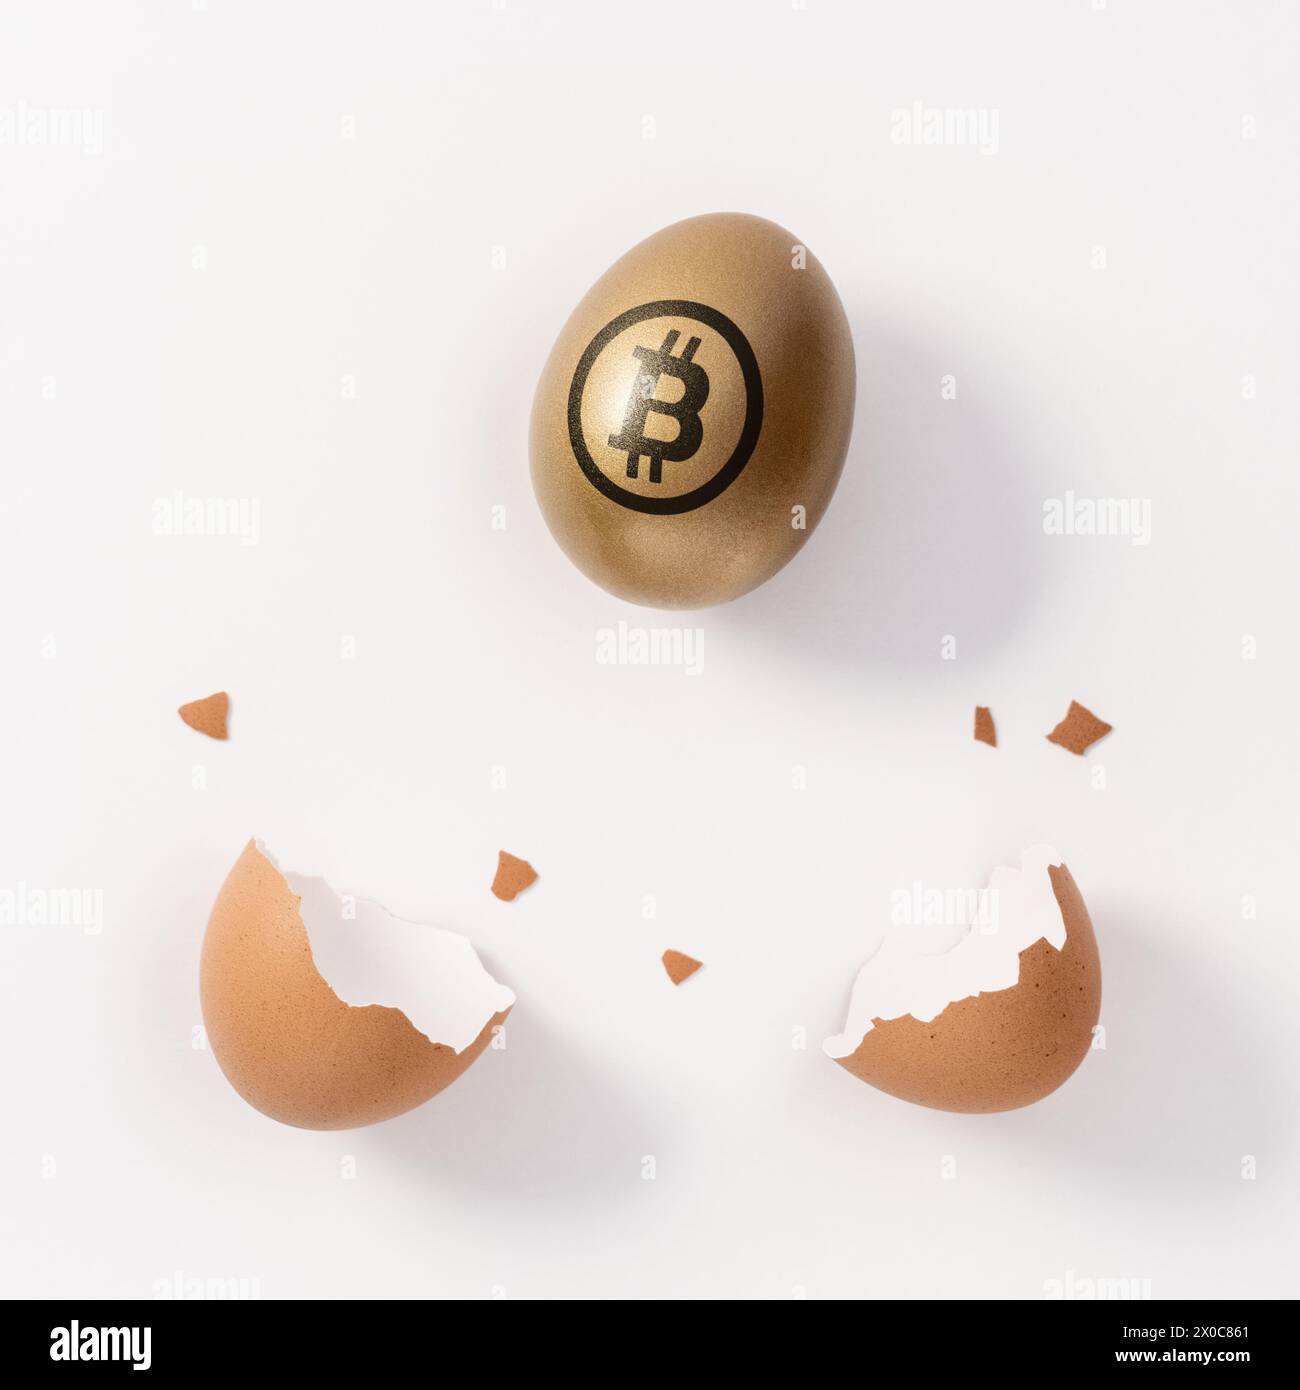 Huevo de oro con un signo de bitcoin y cáscara de huevo sobre fondo blanco. Concepto de inversión mínima. Foto de stock